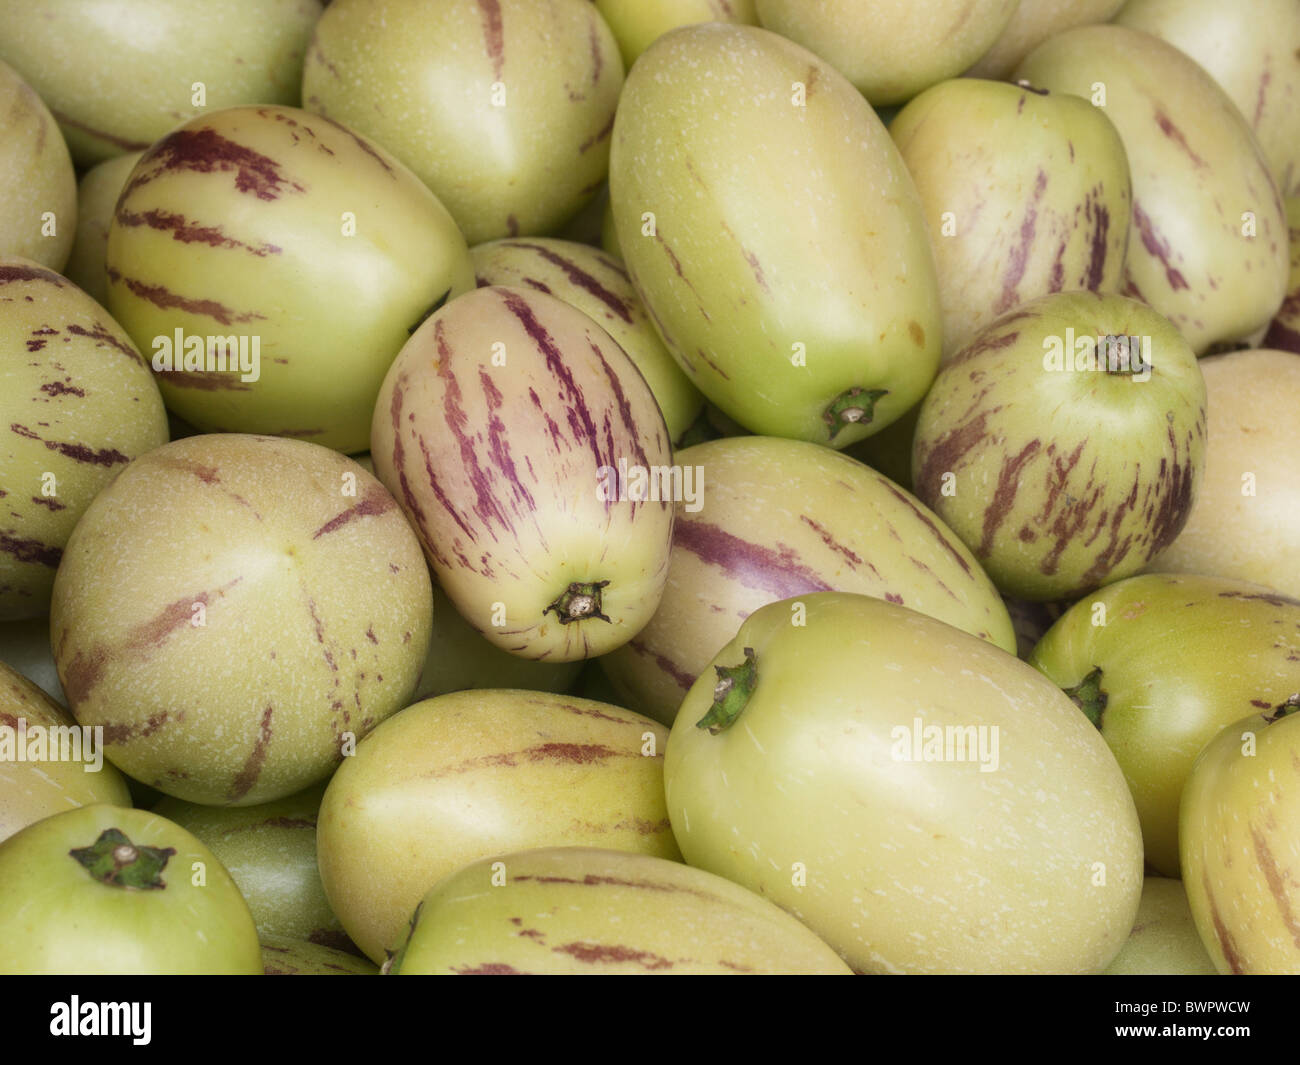 Exotic apples Stock Photo